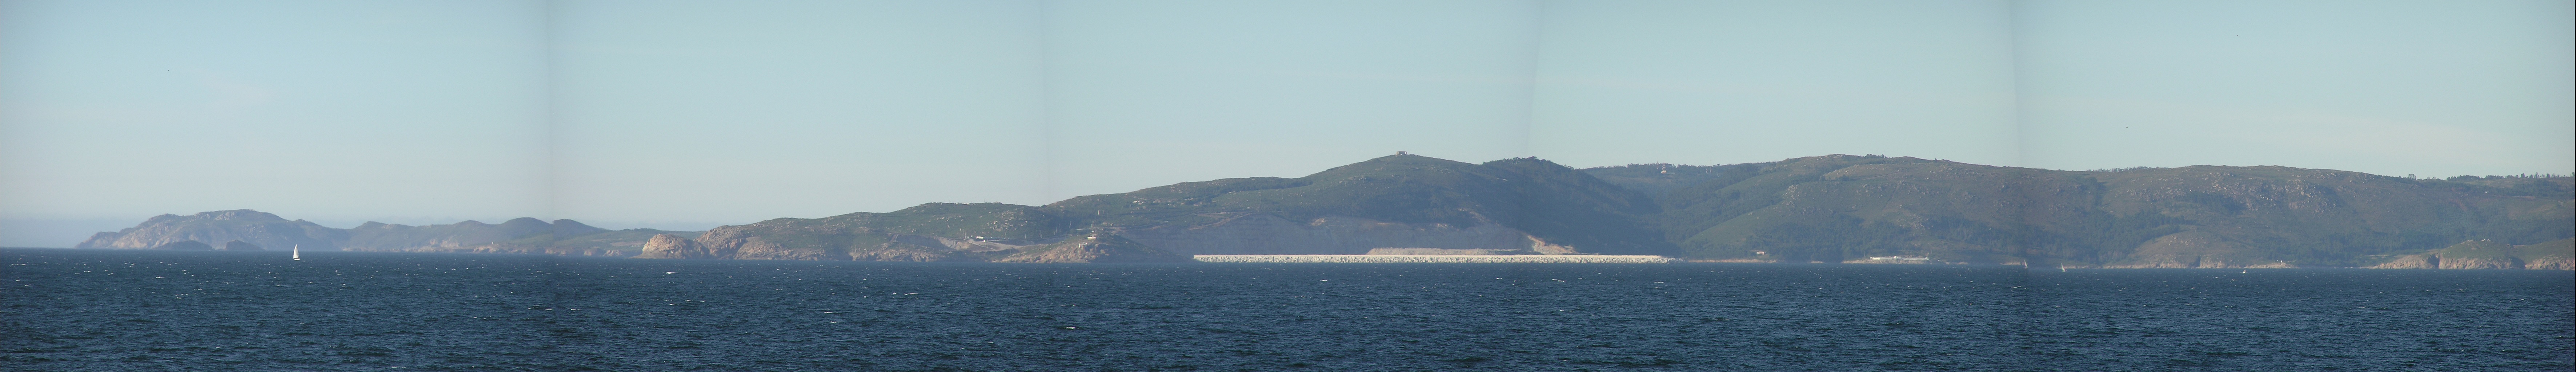 Monteventoso y Prior vistos desde A Coruña